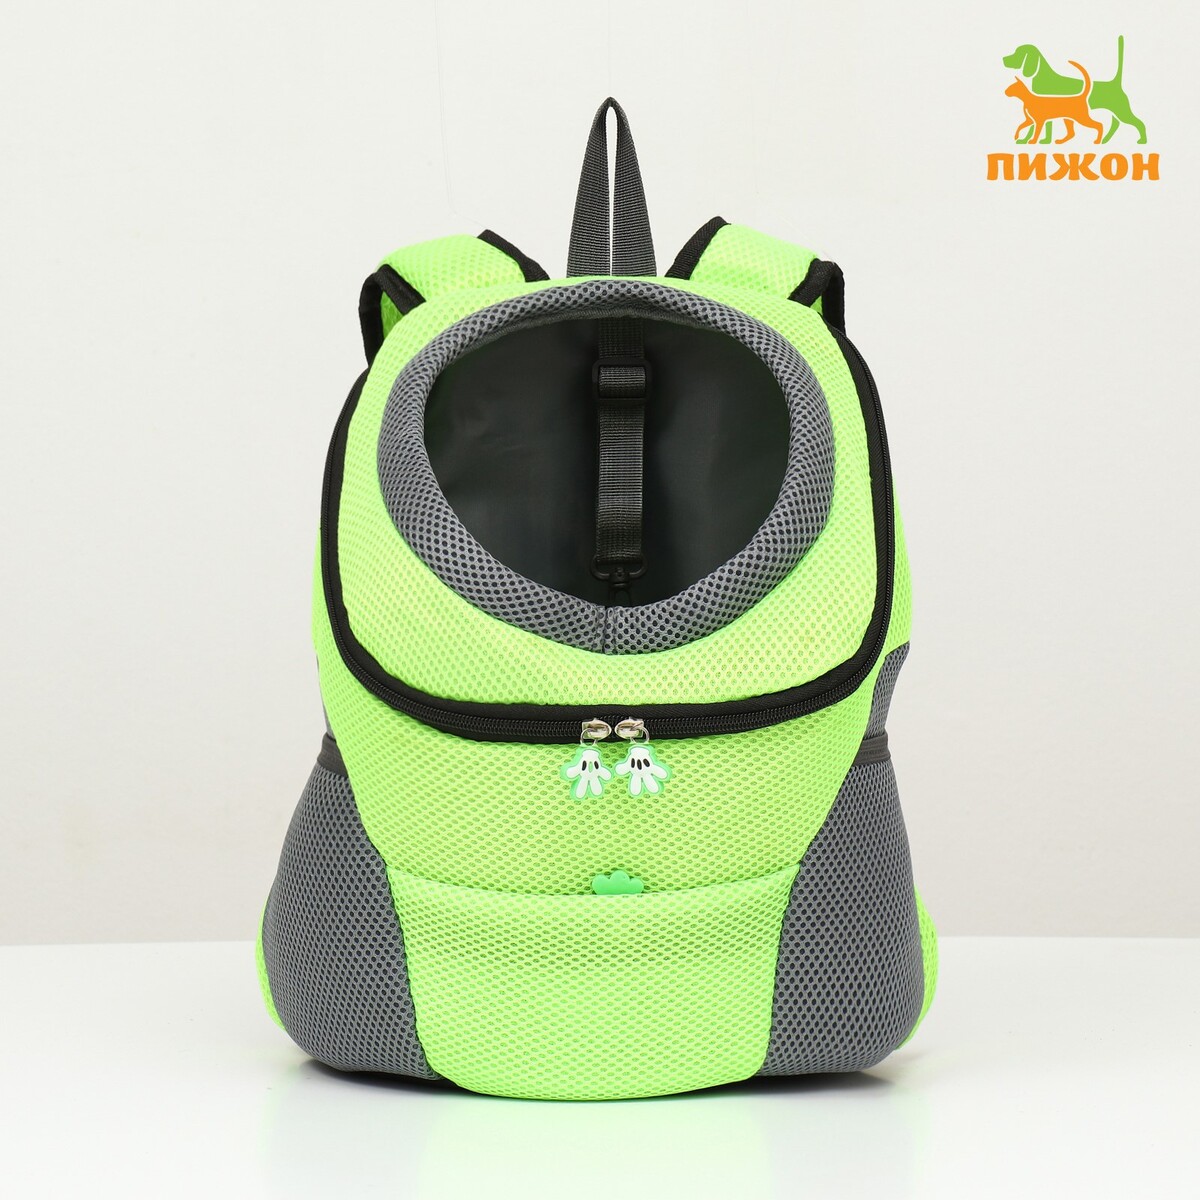 Рюкзак-переноска для животных, максимальный вес 10 кг, 30 х 16 х 34 см, зеленый